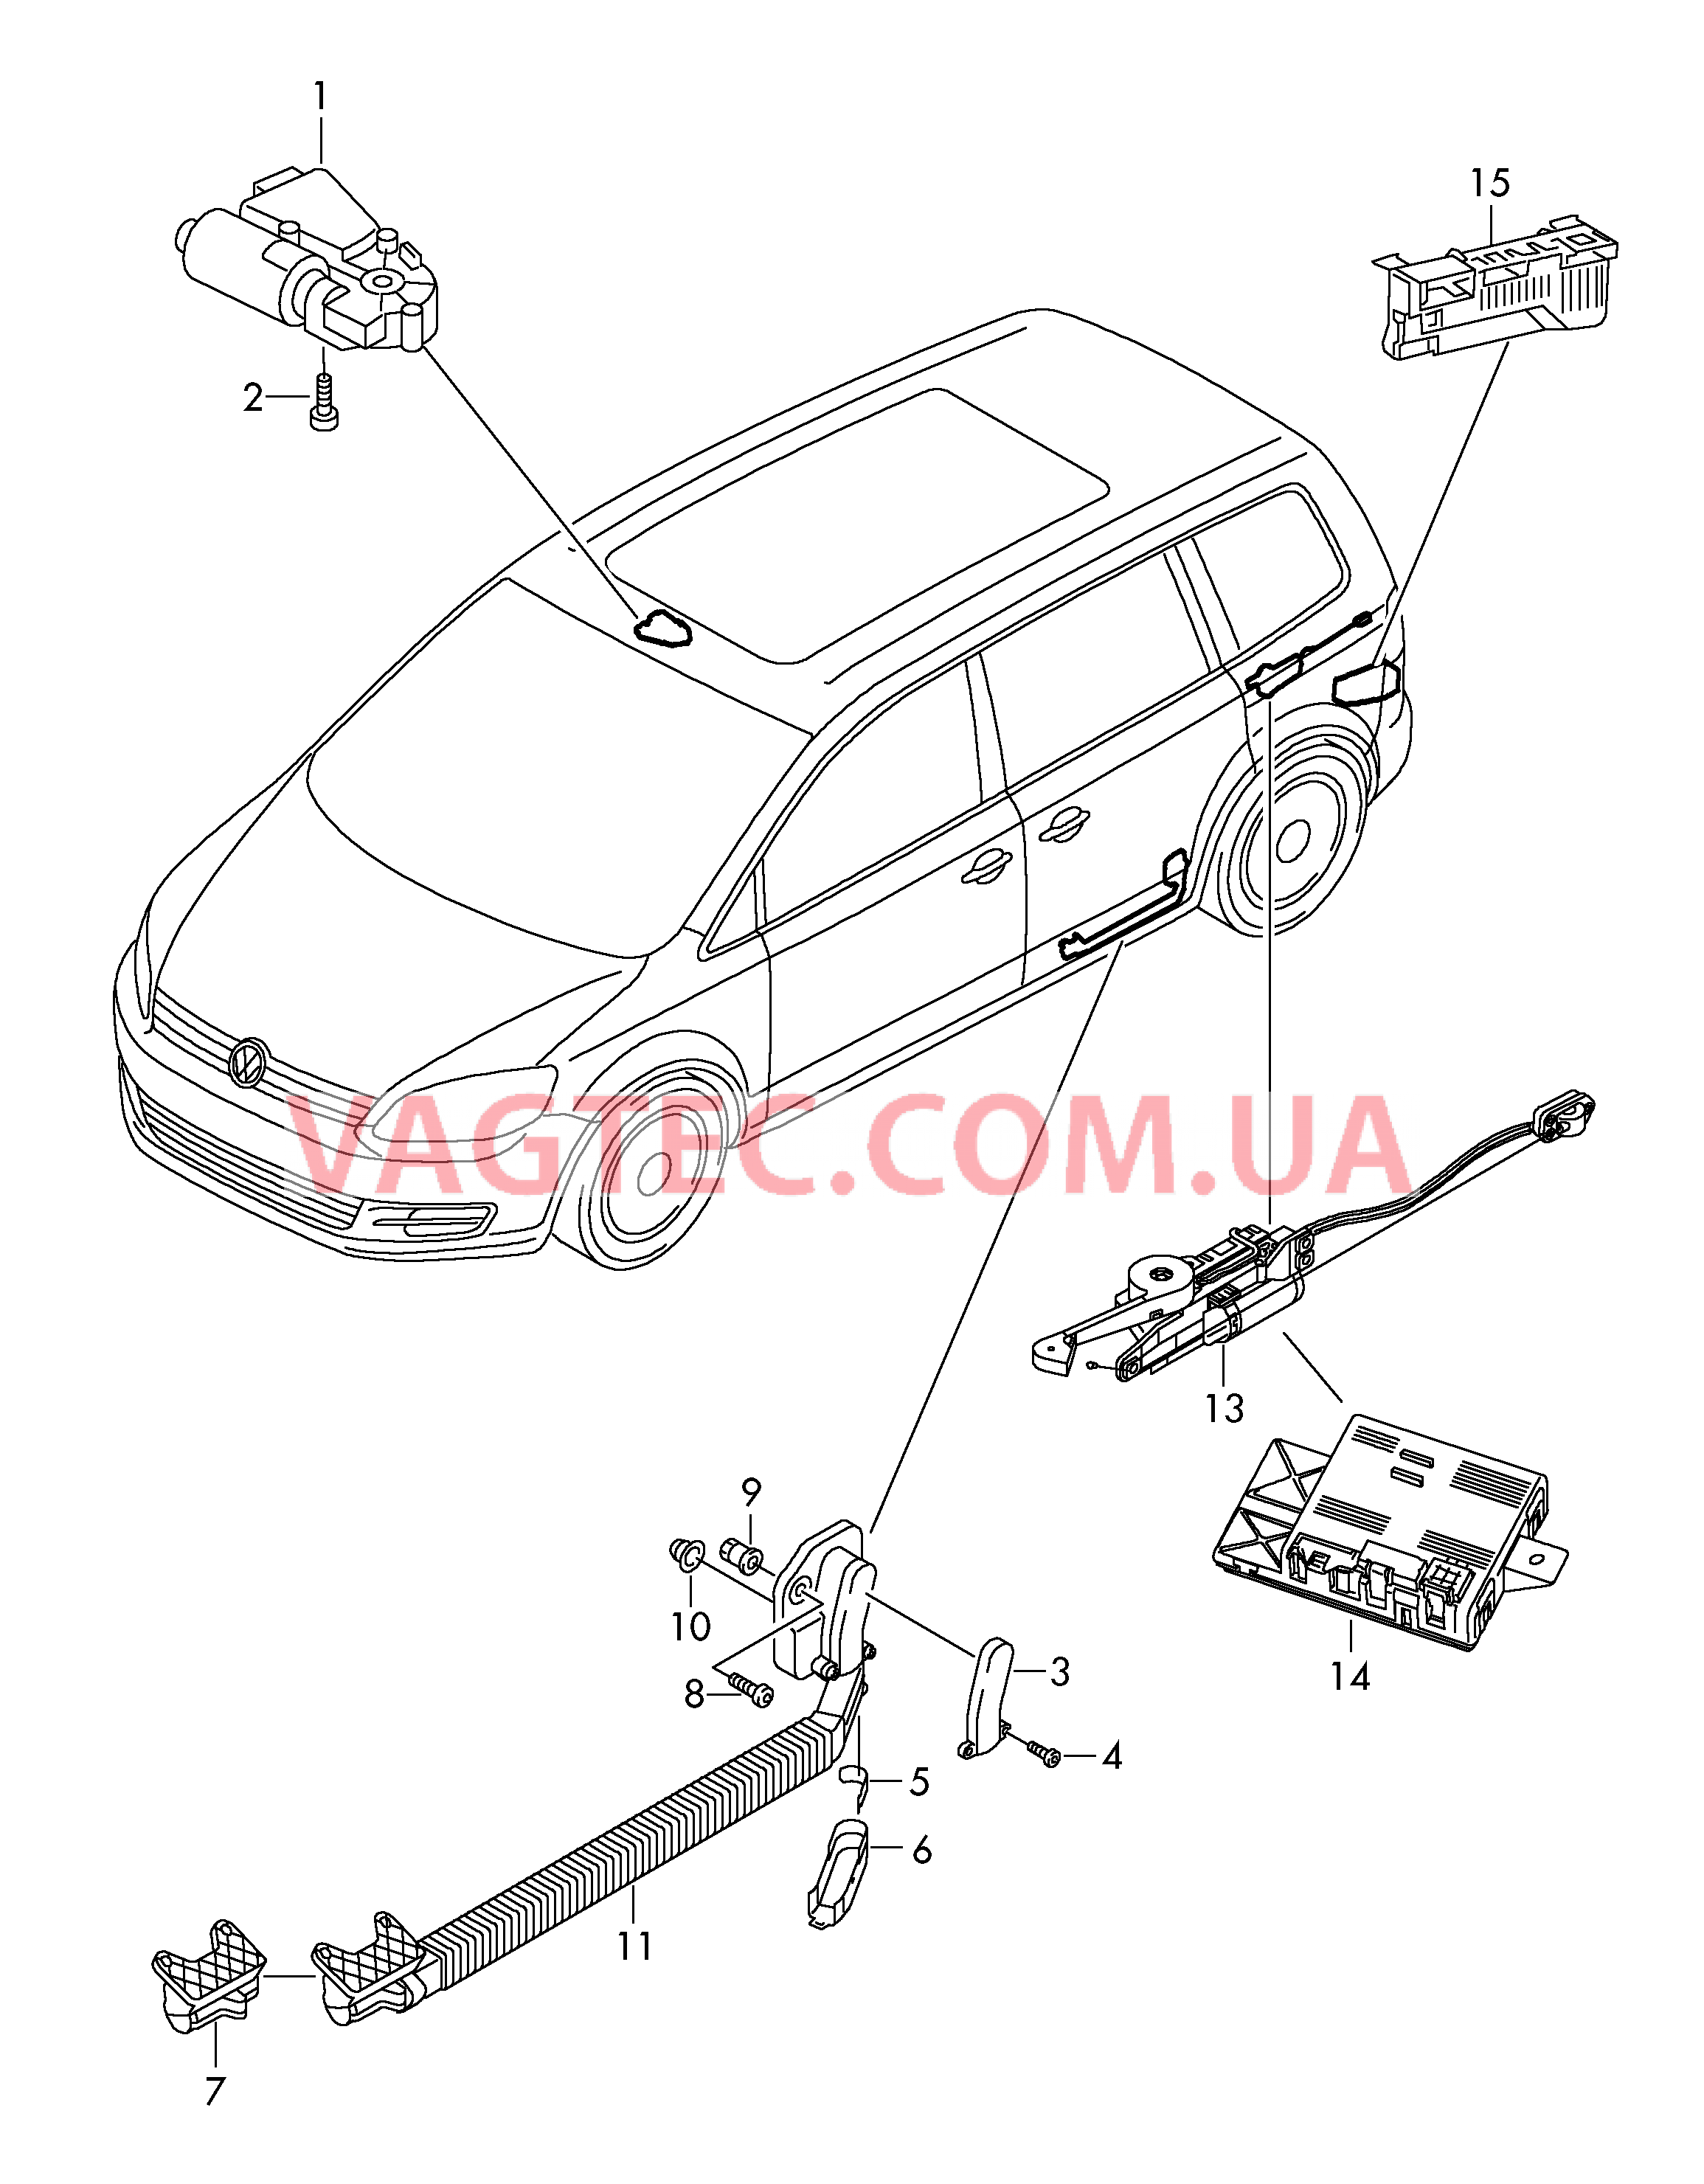 Мотор привода люка Электродетали для сдвижной двери  Блок управления доводчика  для SEAT Alhambra 2015